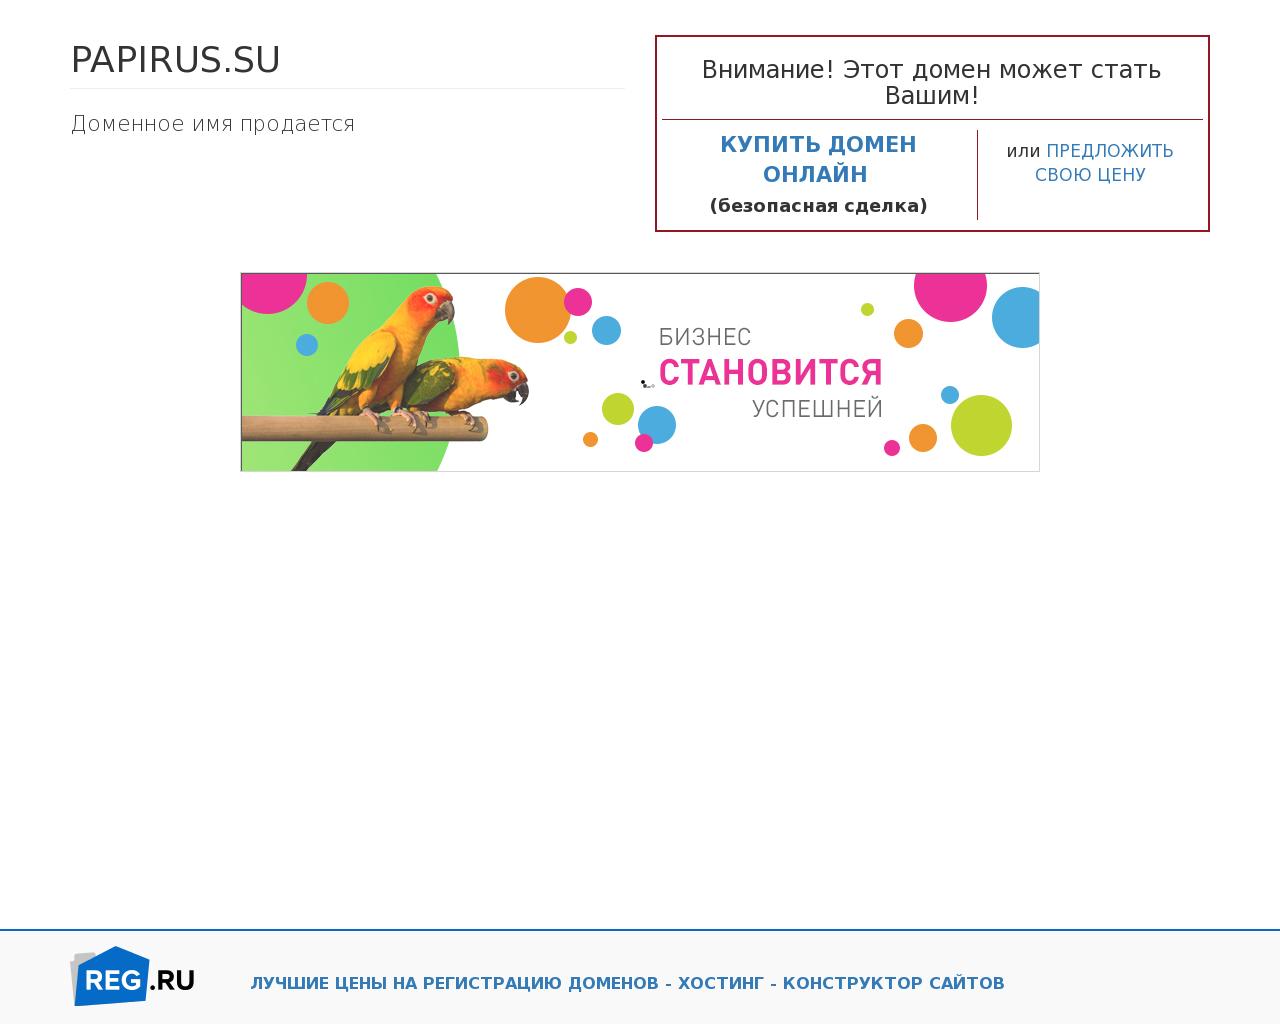 Изображение сайта papirus.su в разрешении 1280x1024